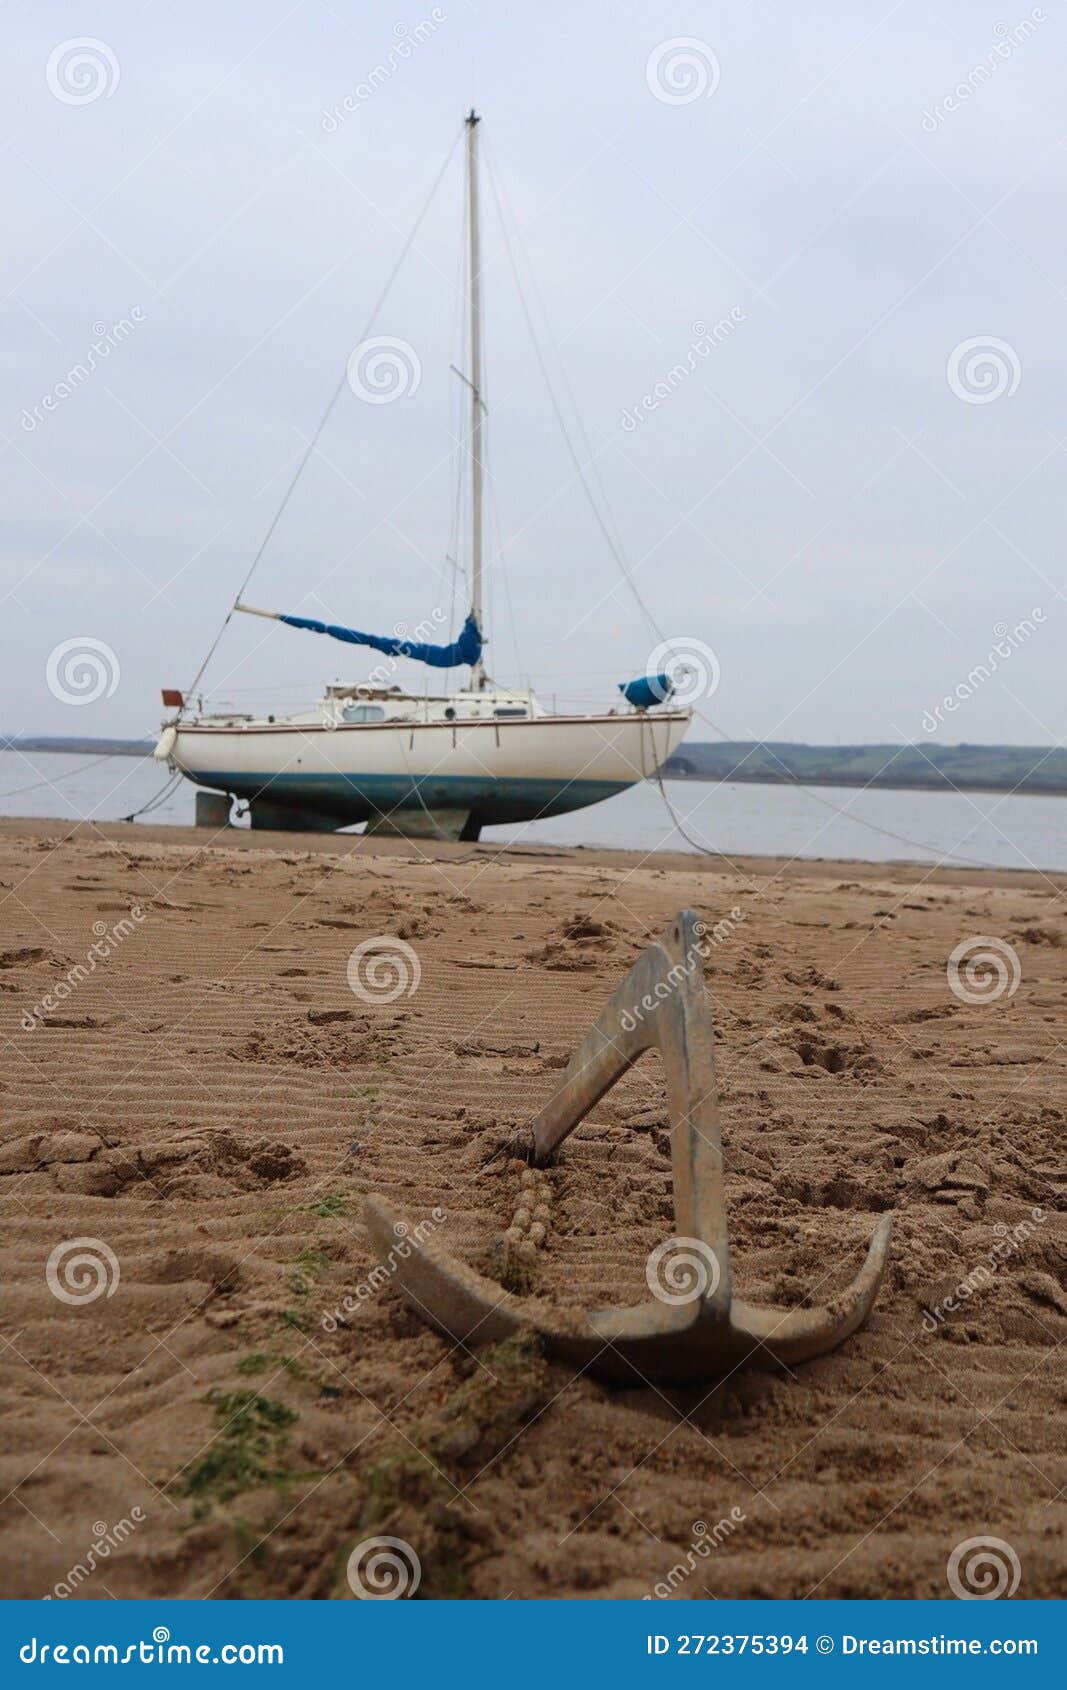 Barco De Vela Amarrado En La Playa Con Espacio Para Anclas Y